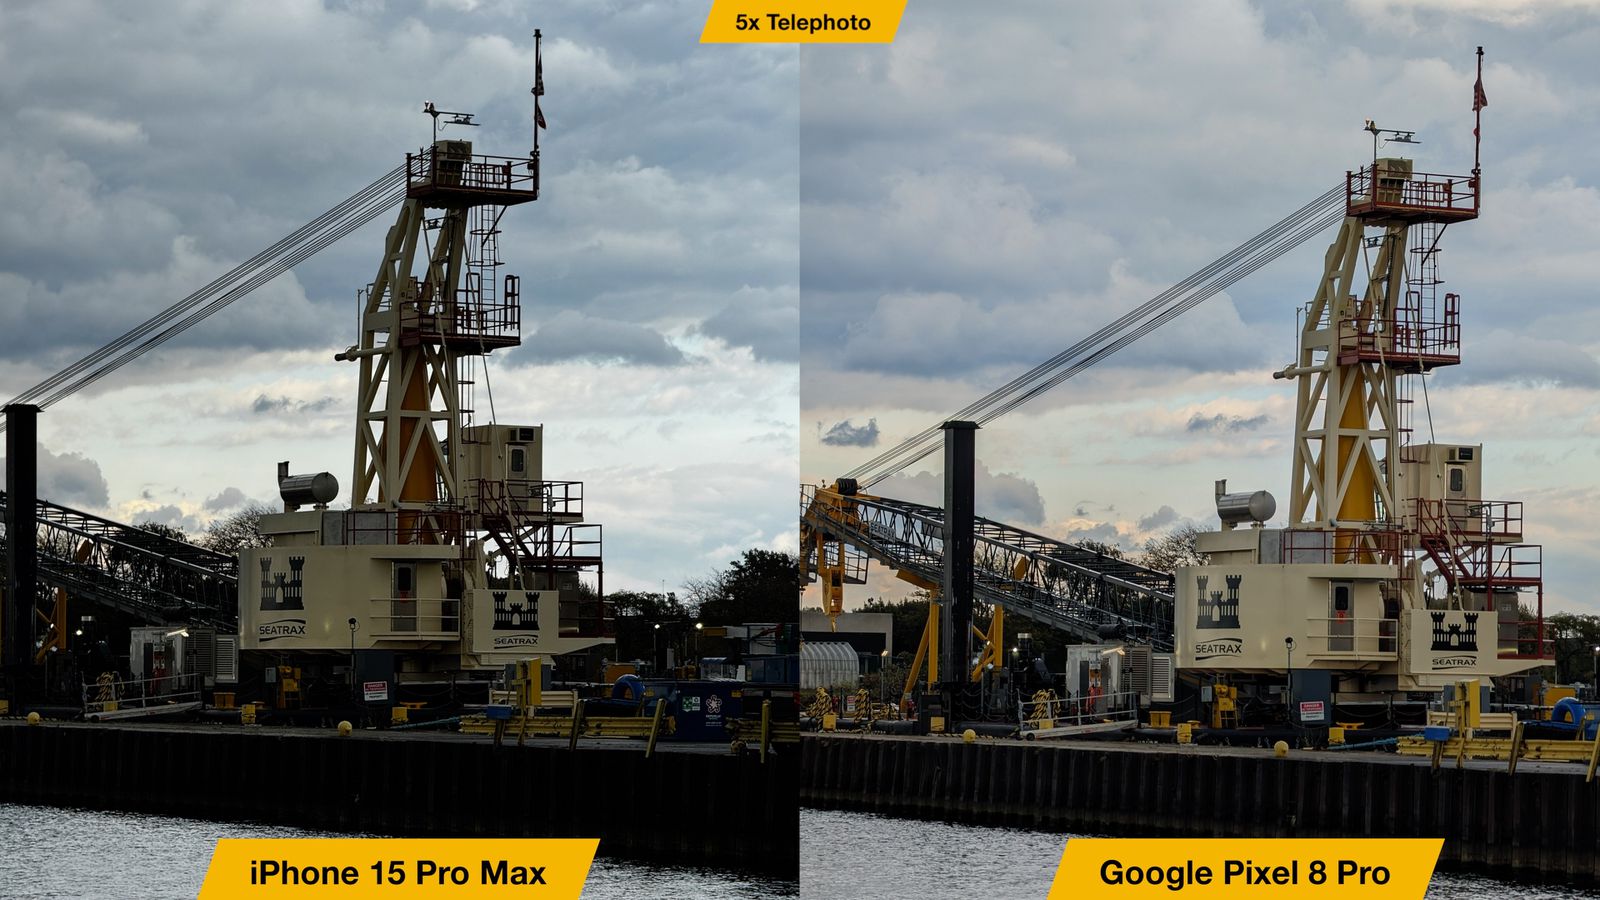 iPhoneIslam.com'dan iPhone 15 Pro Max ve Google Pixel 8 Pro'nun kameraları arasındaki karşılaştırma.